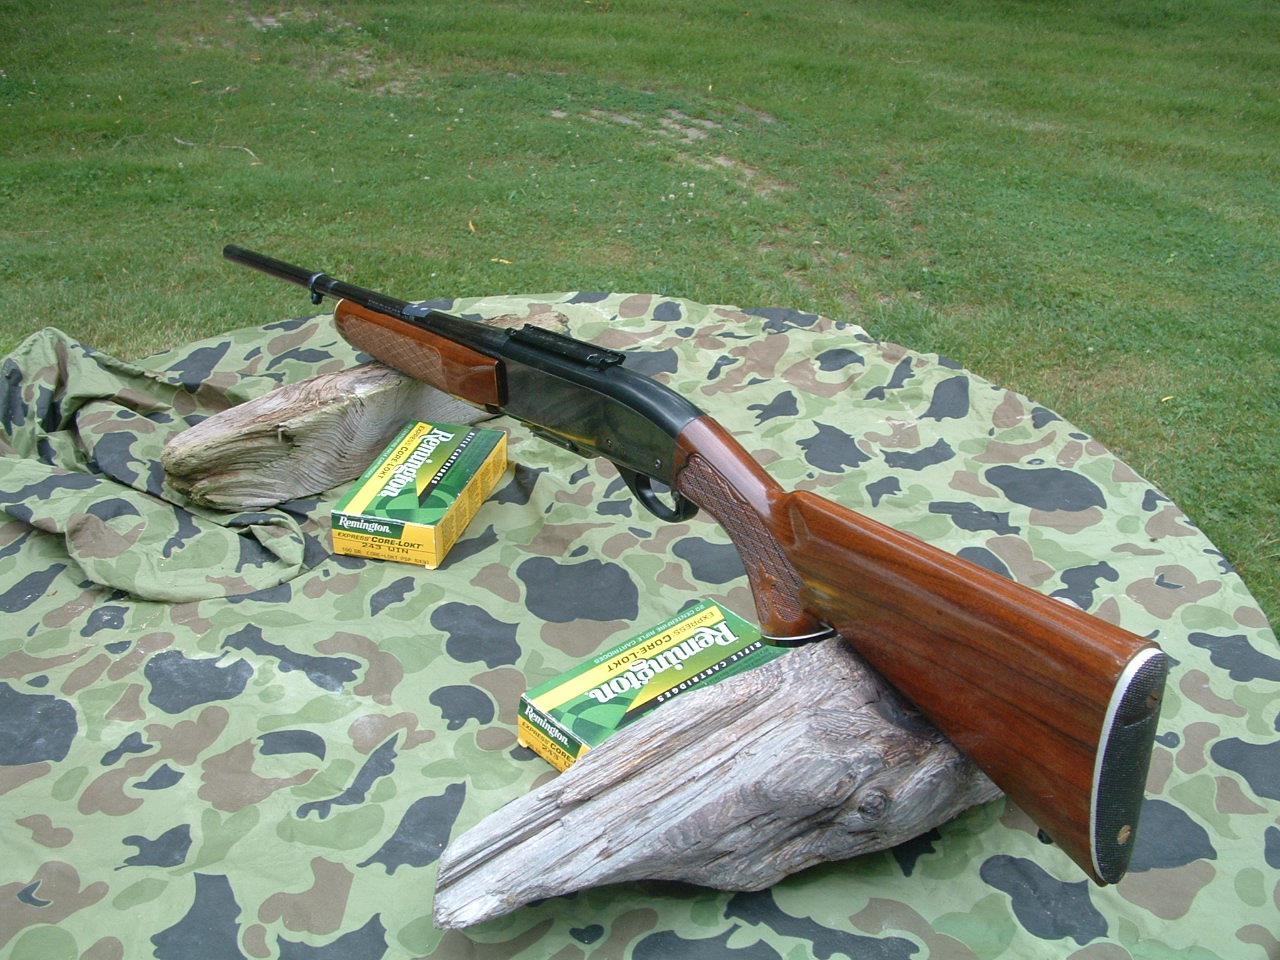 243 remington rifle for sale